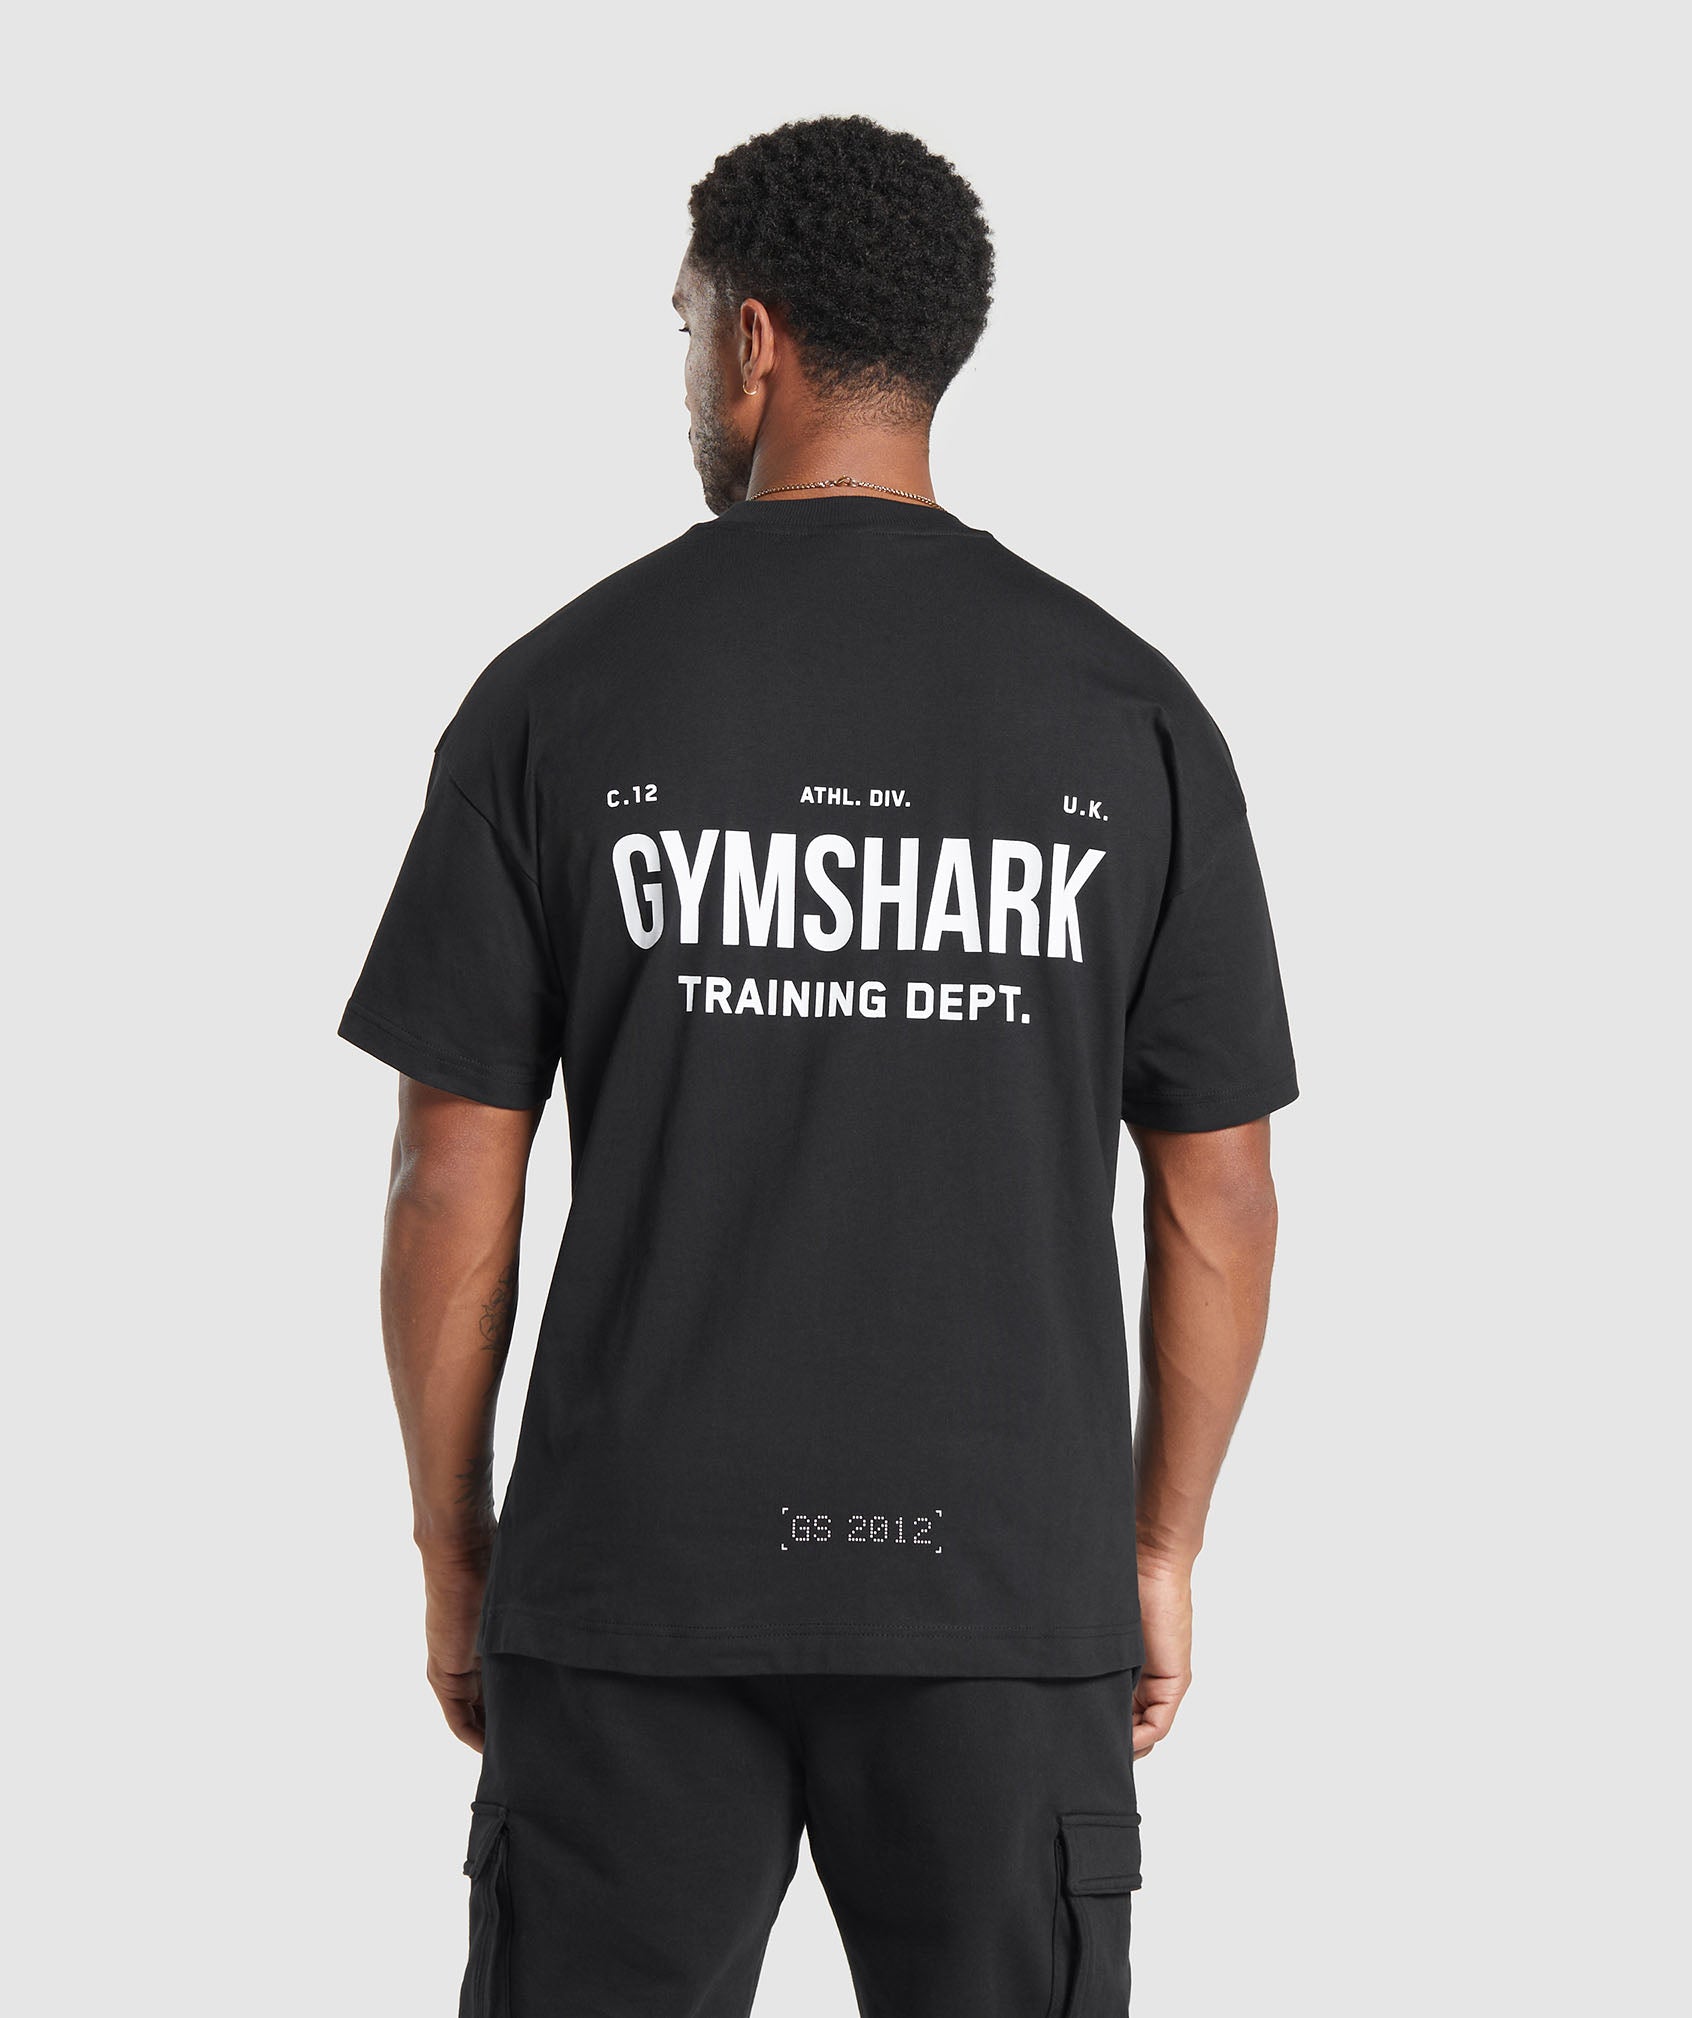 Gymshark Training Dept. T-Shirt - Fog Green